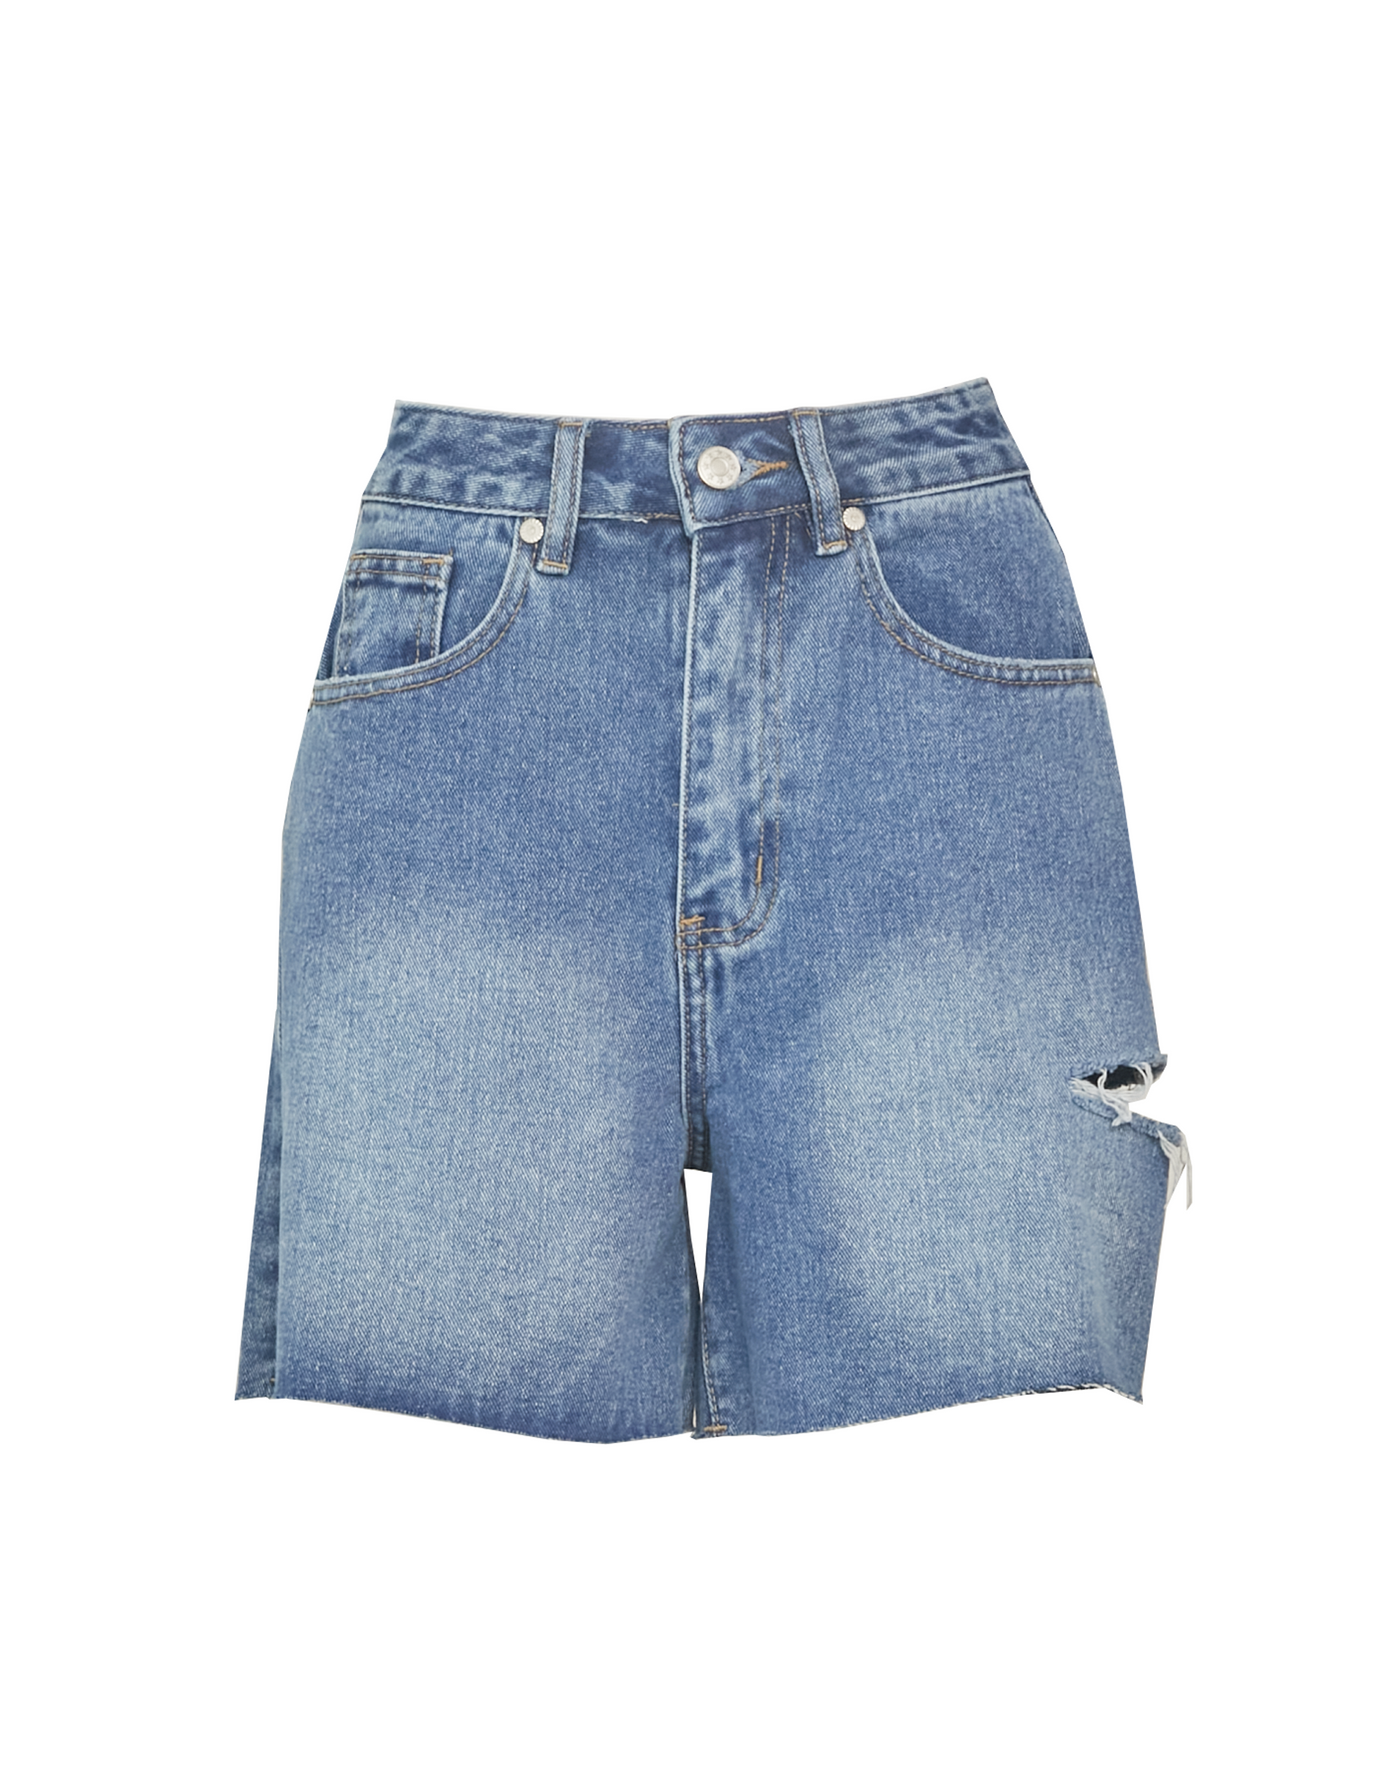 Sunlight Denim Shorts (Mid Wash) - Mid Wash Denim Shorts - Women's Shorts - Charcoal Clothing